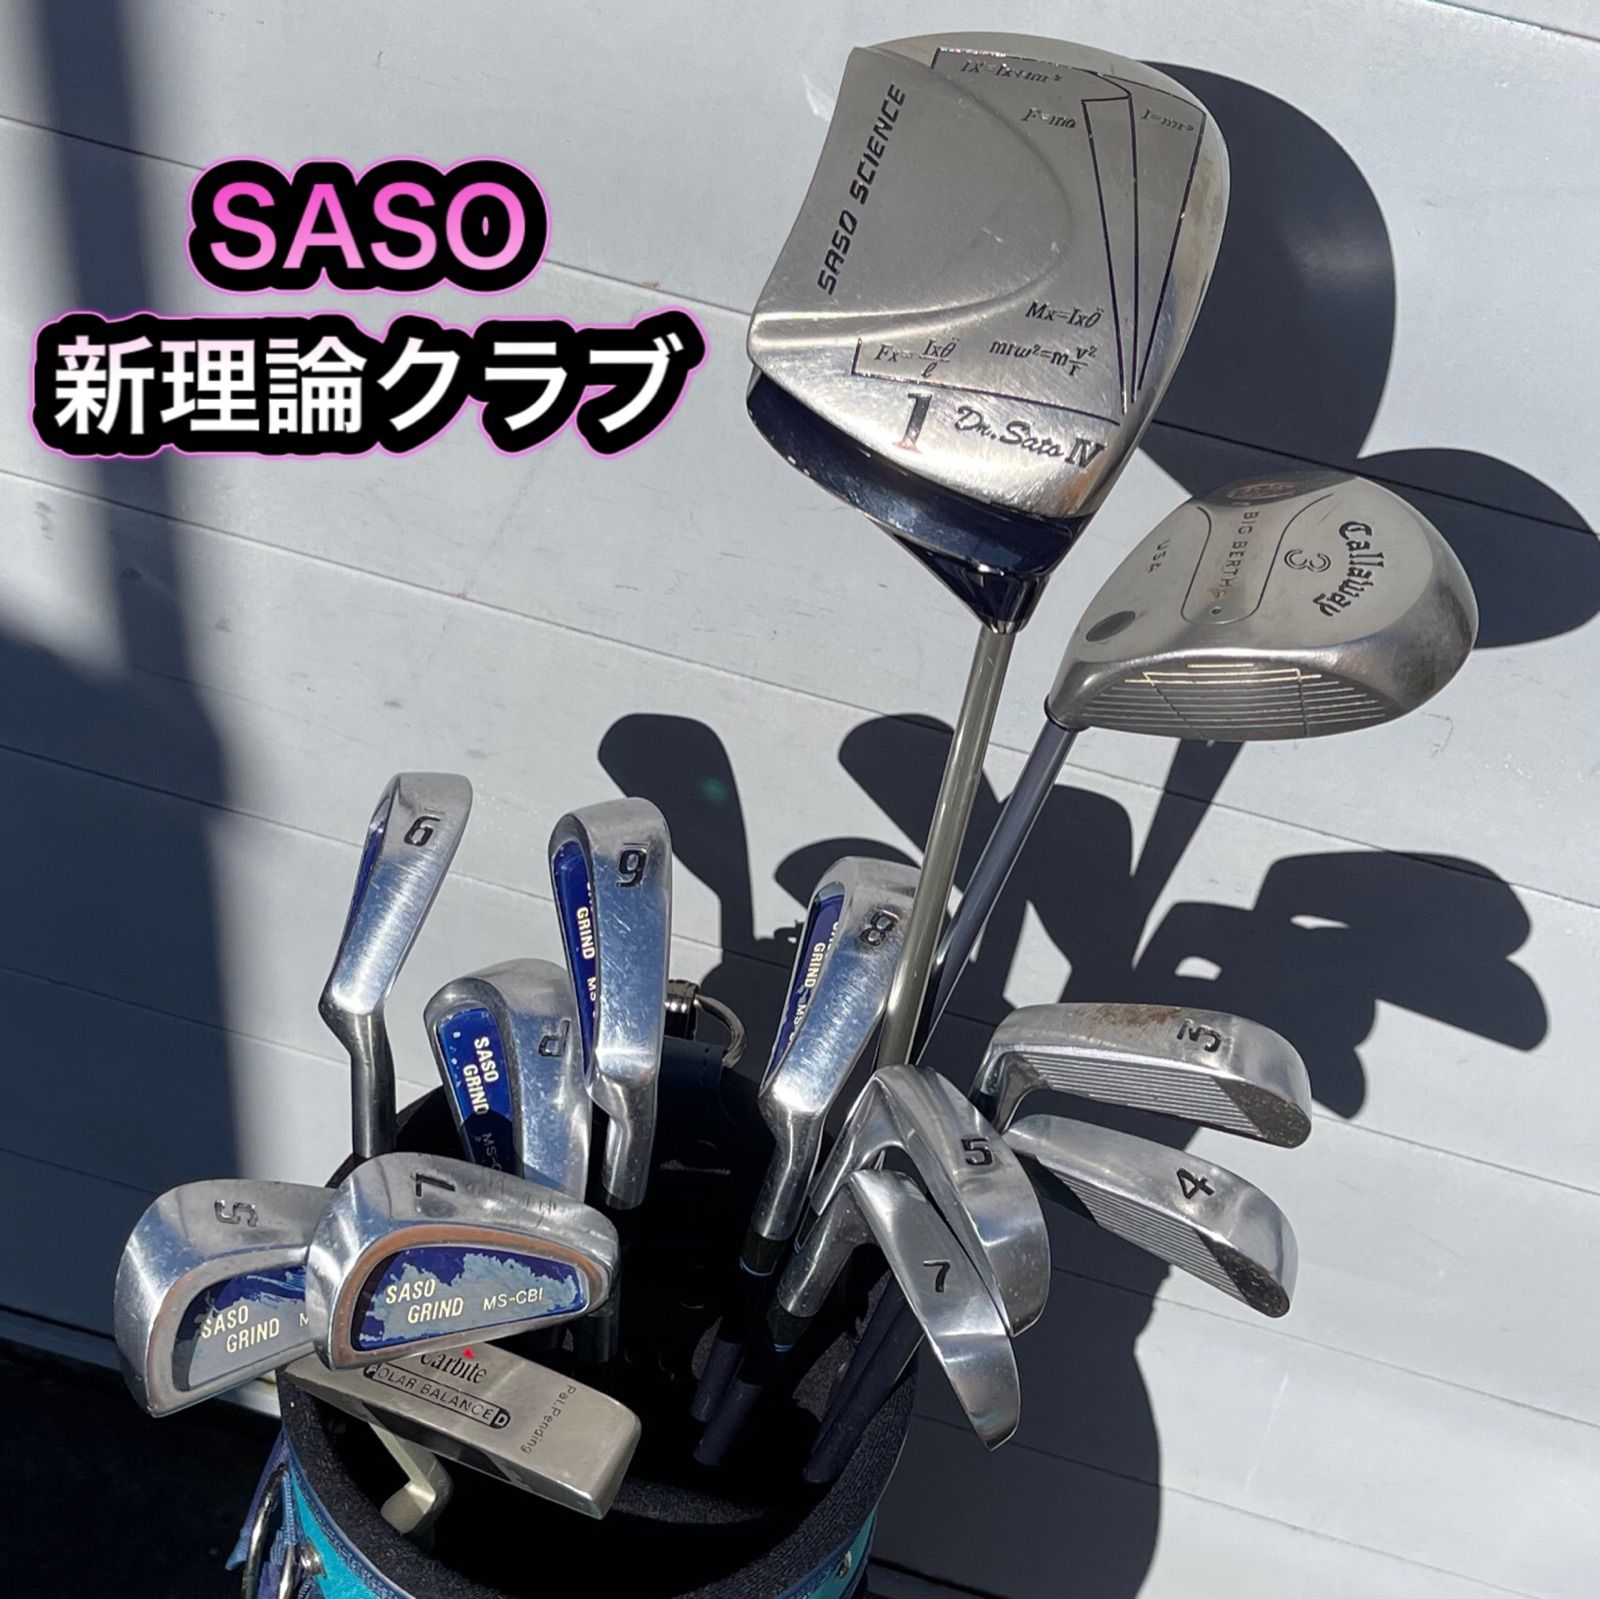 送料込み】 ☆C+11-A5【男性用】新理論クラブSASO - ゴルフクラブ研究